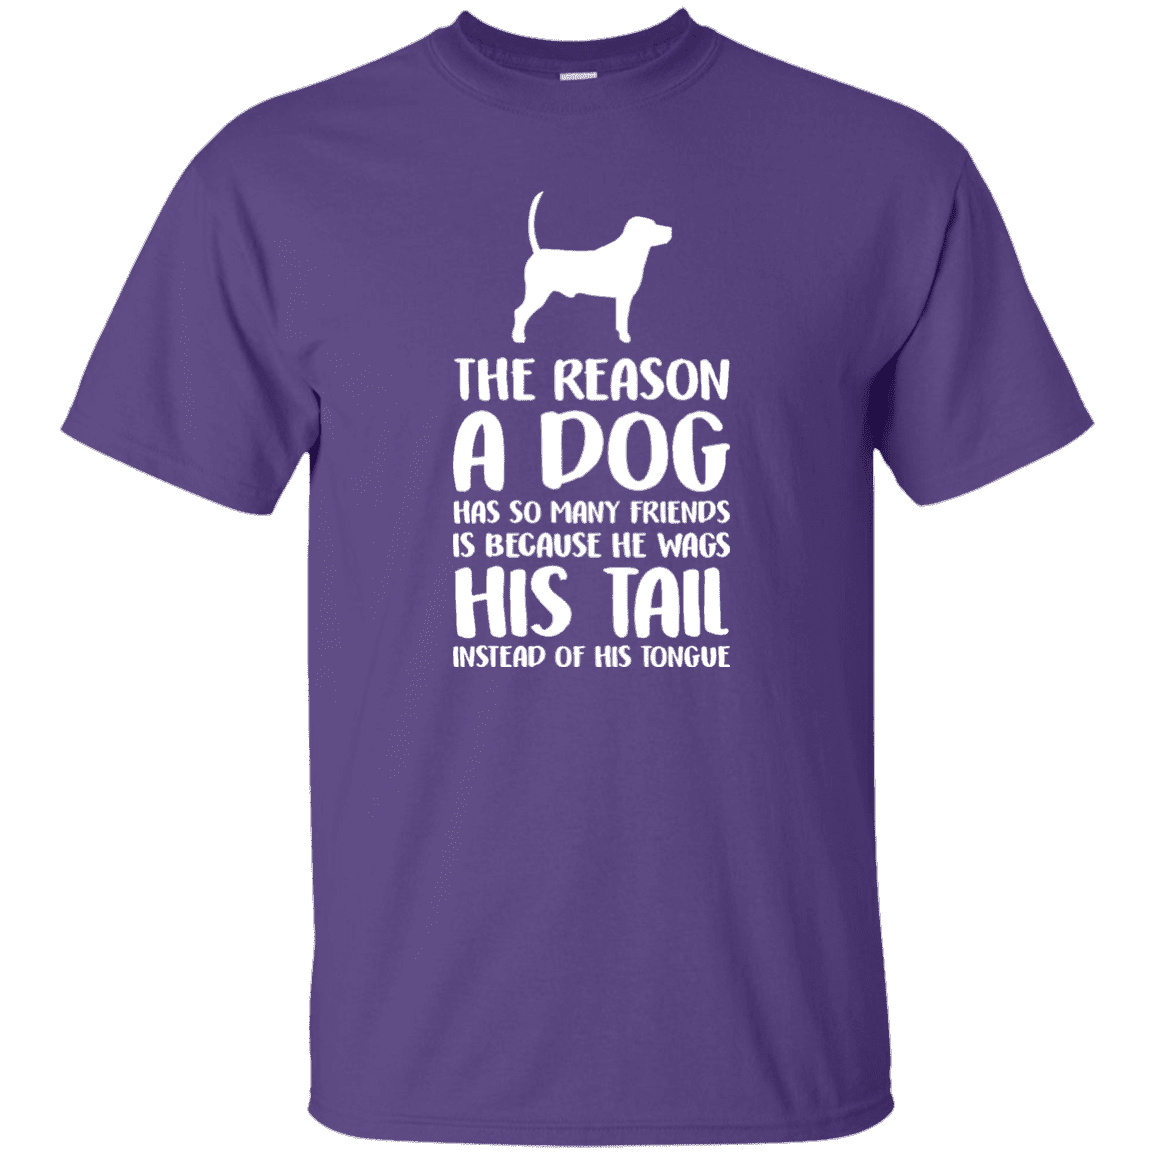 The Reason A Dog Has So Many Friends - T Shirt.